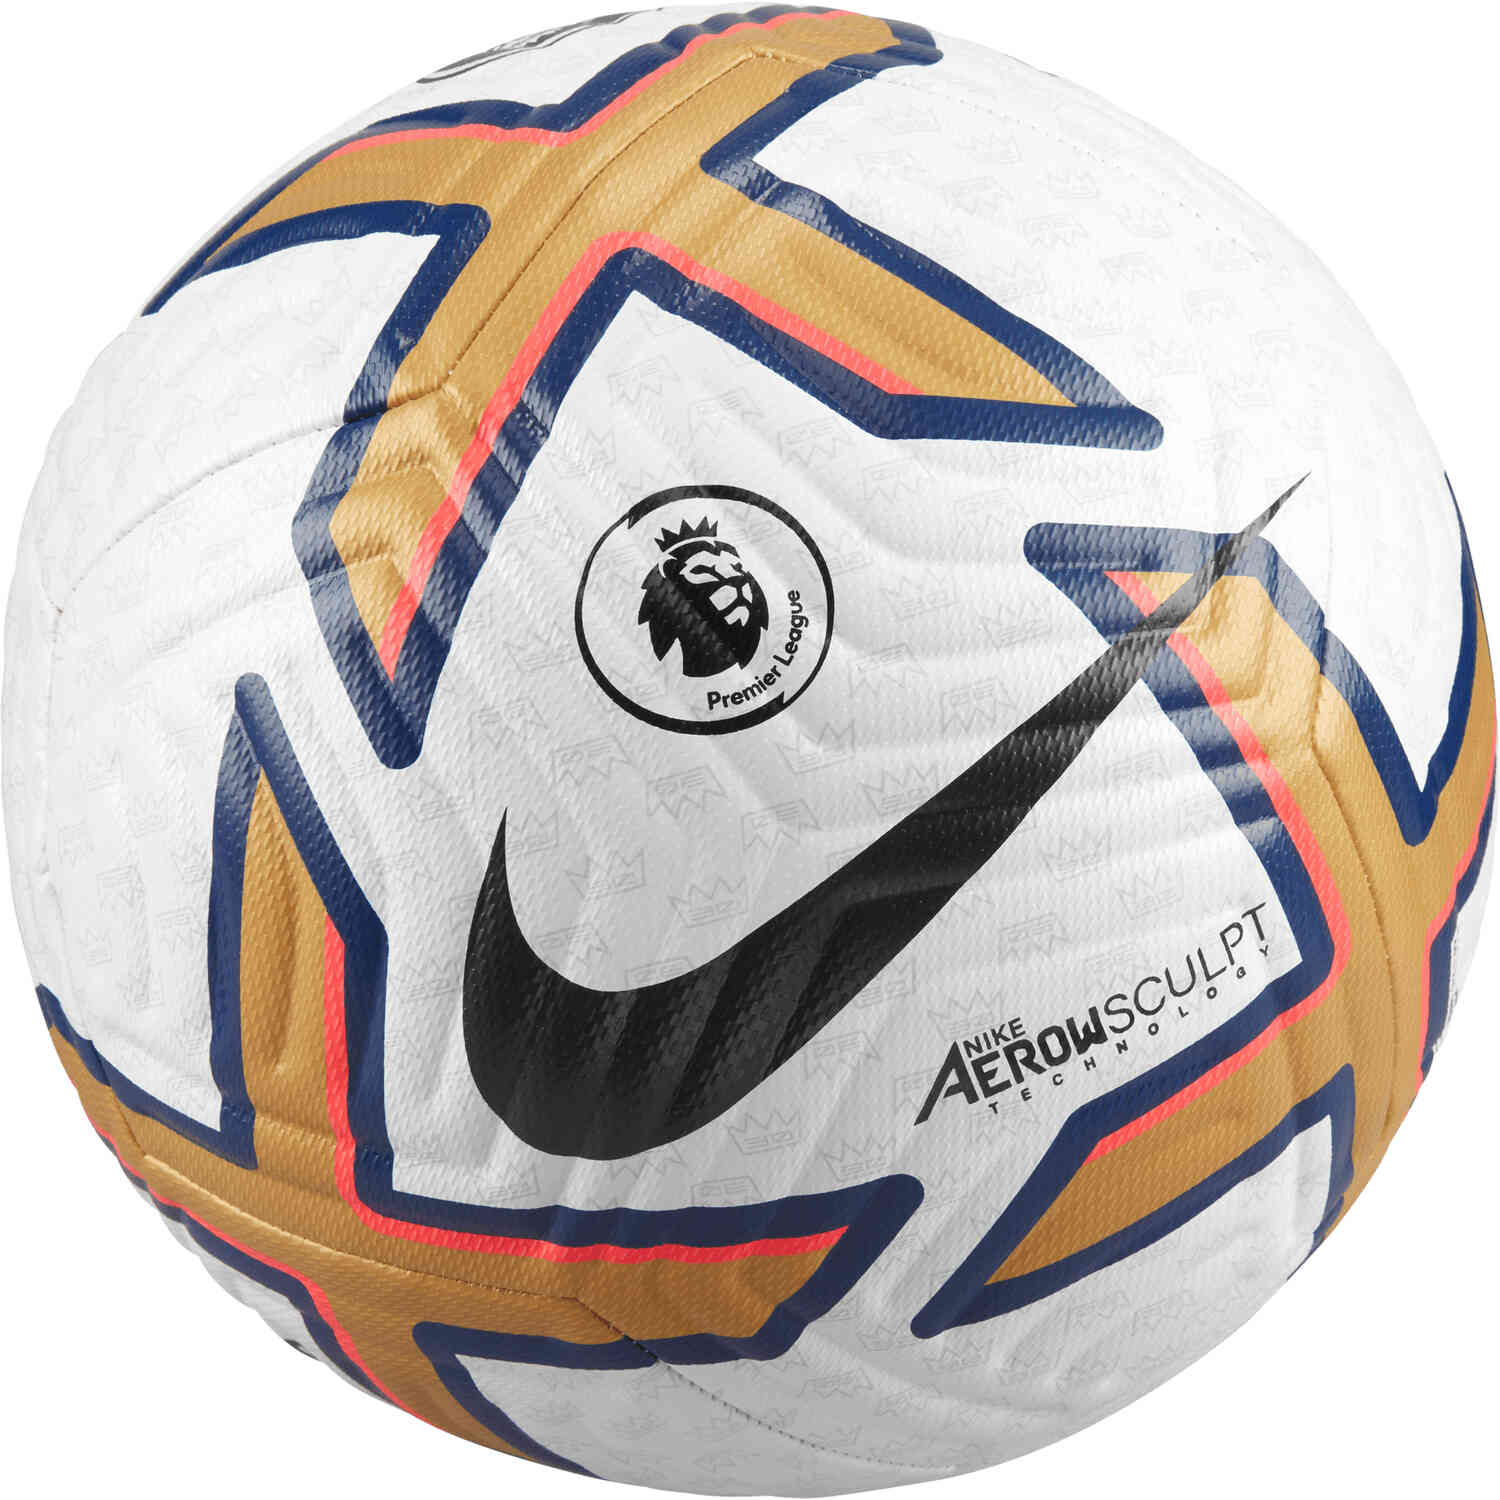 Premier League Academy Soccer Ball.